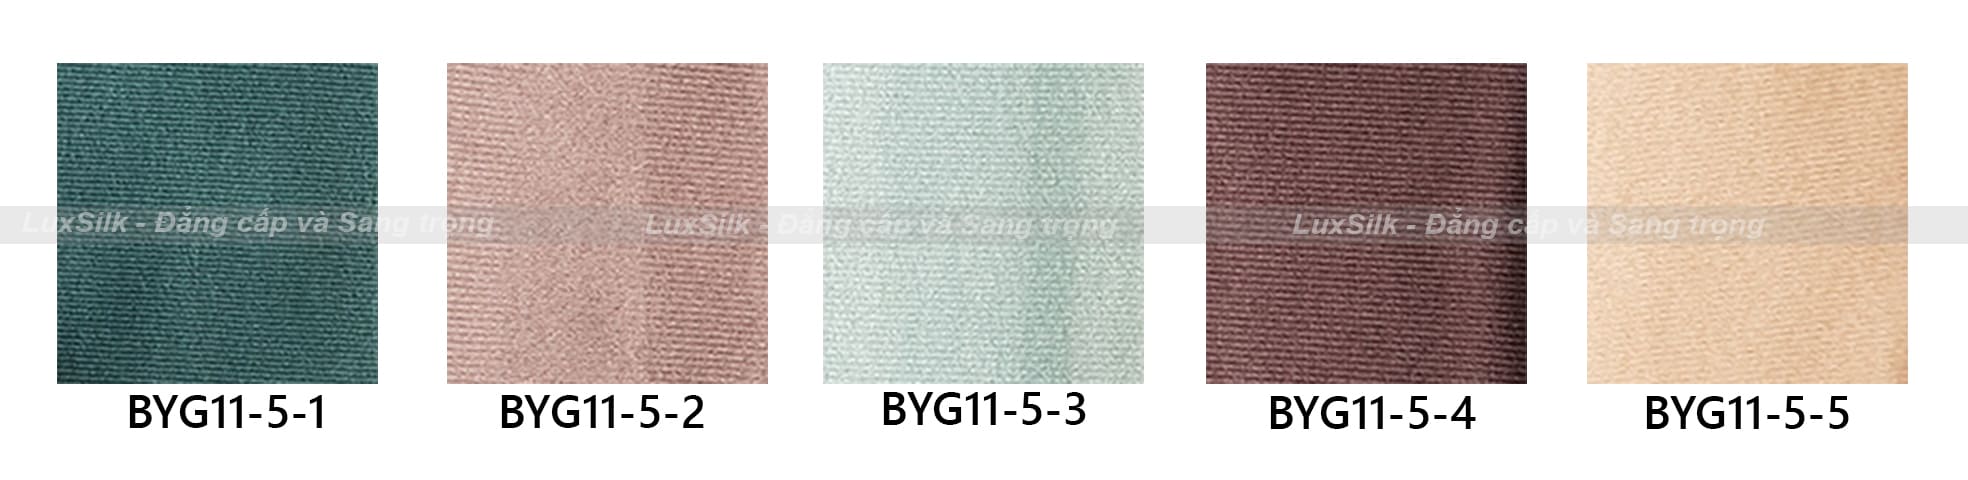 Rèm vải BYG vol 11 mã BYG11-5